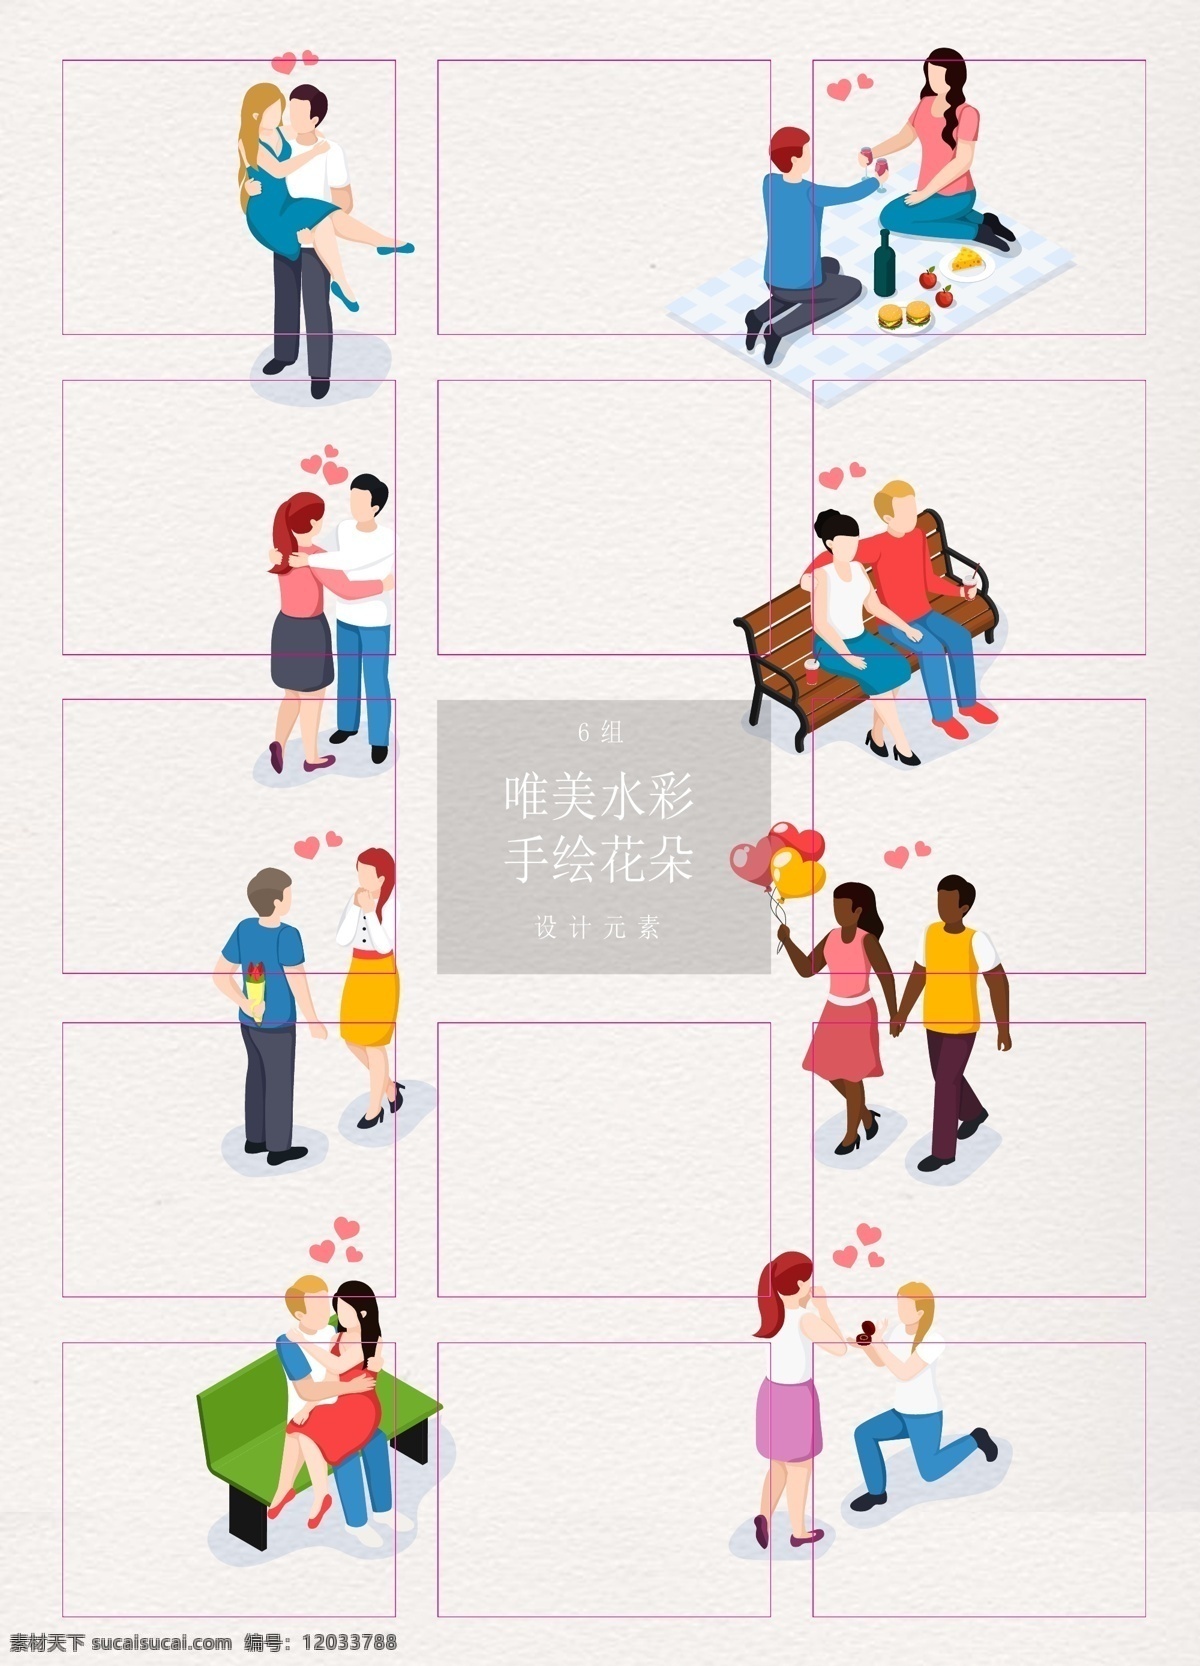 彩色 卡通 热恋 情侣 人物 矢量图 谈恋爱 约会 告白 求婚 2.5d 等距设计